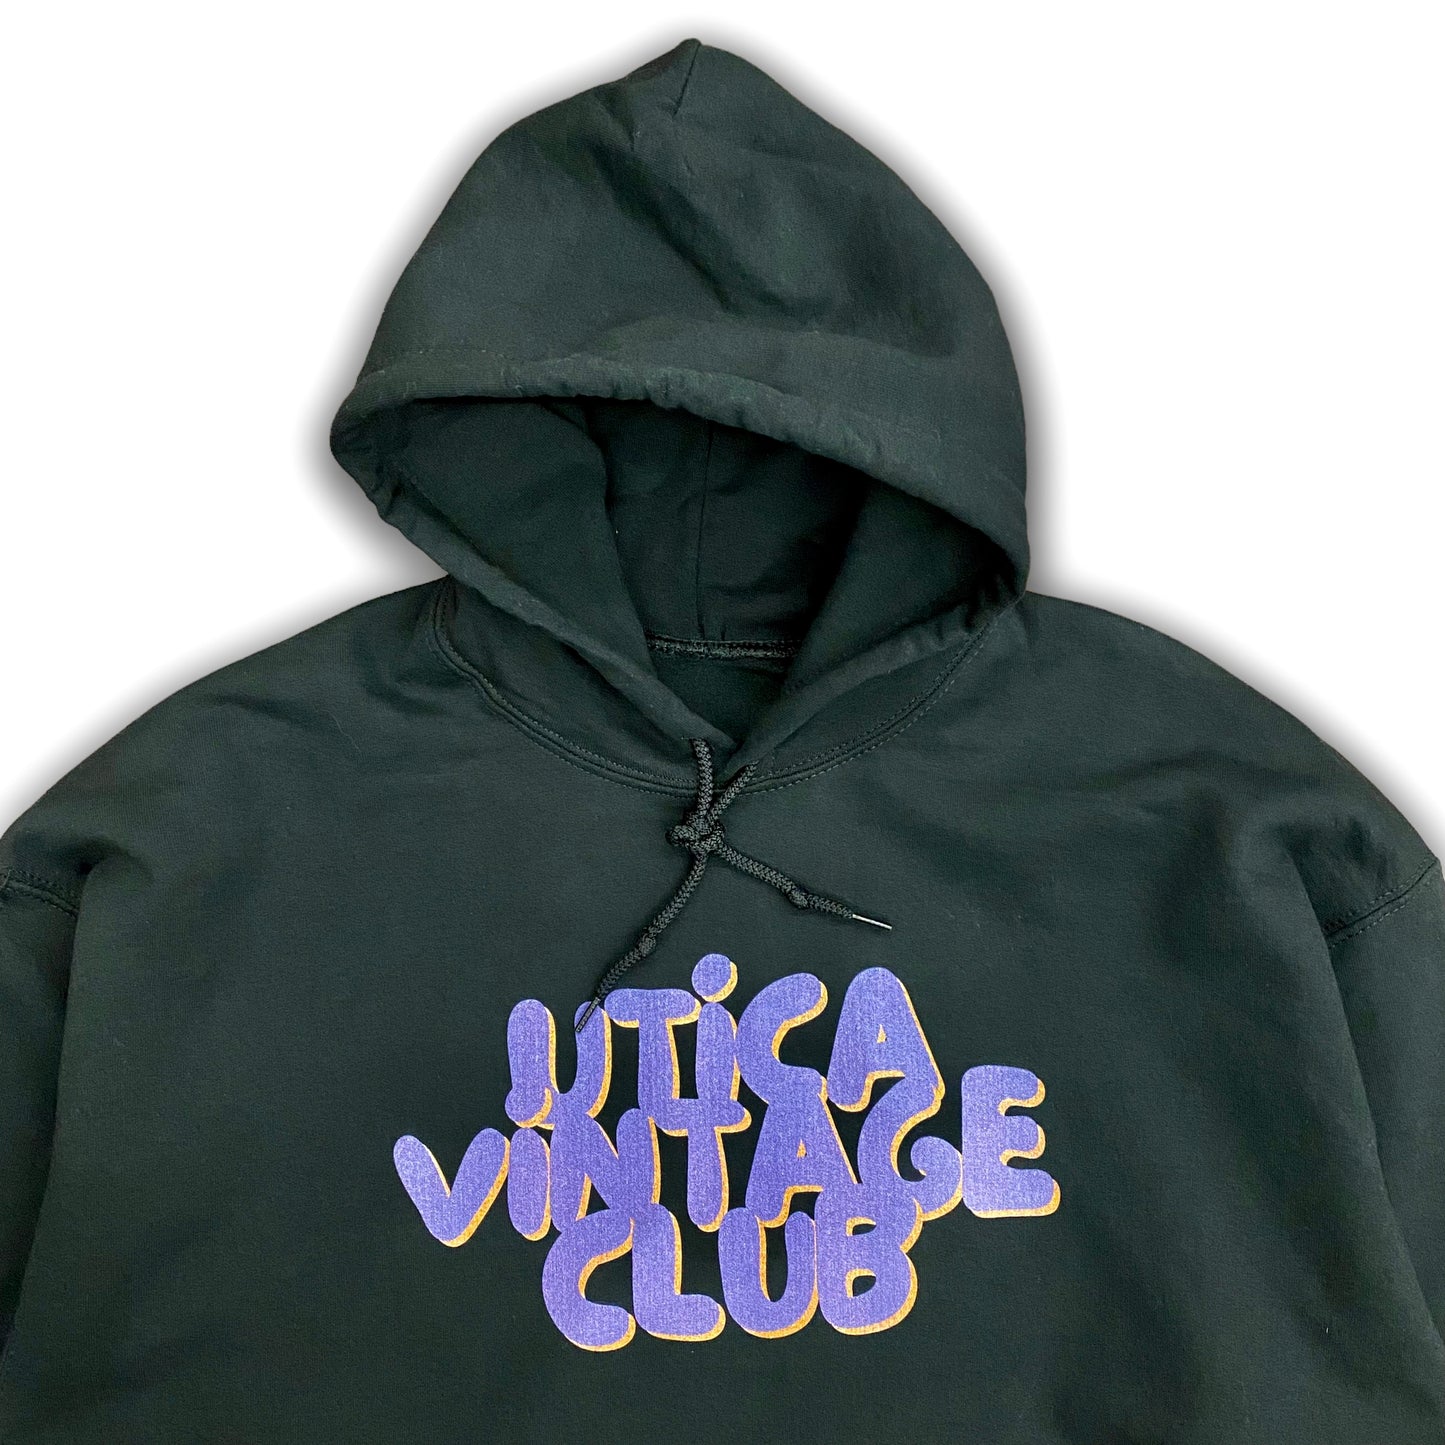 Utica Vintage Club Logo Hoodie (Small - XXXL)